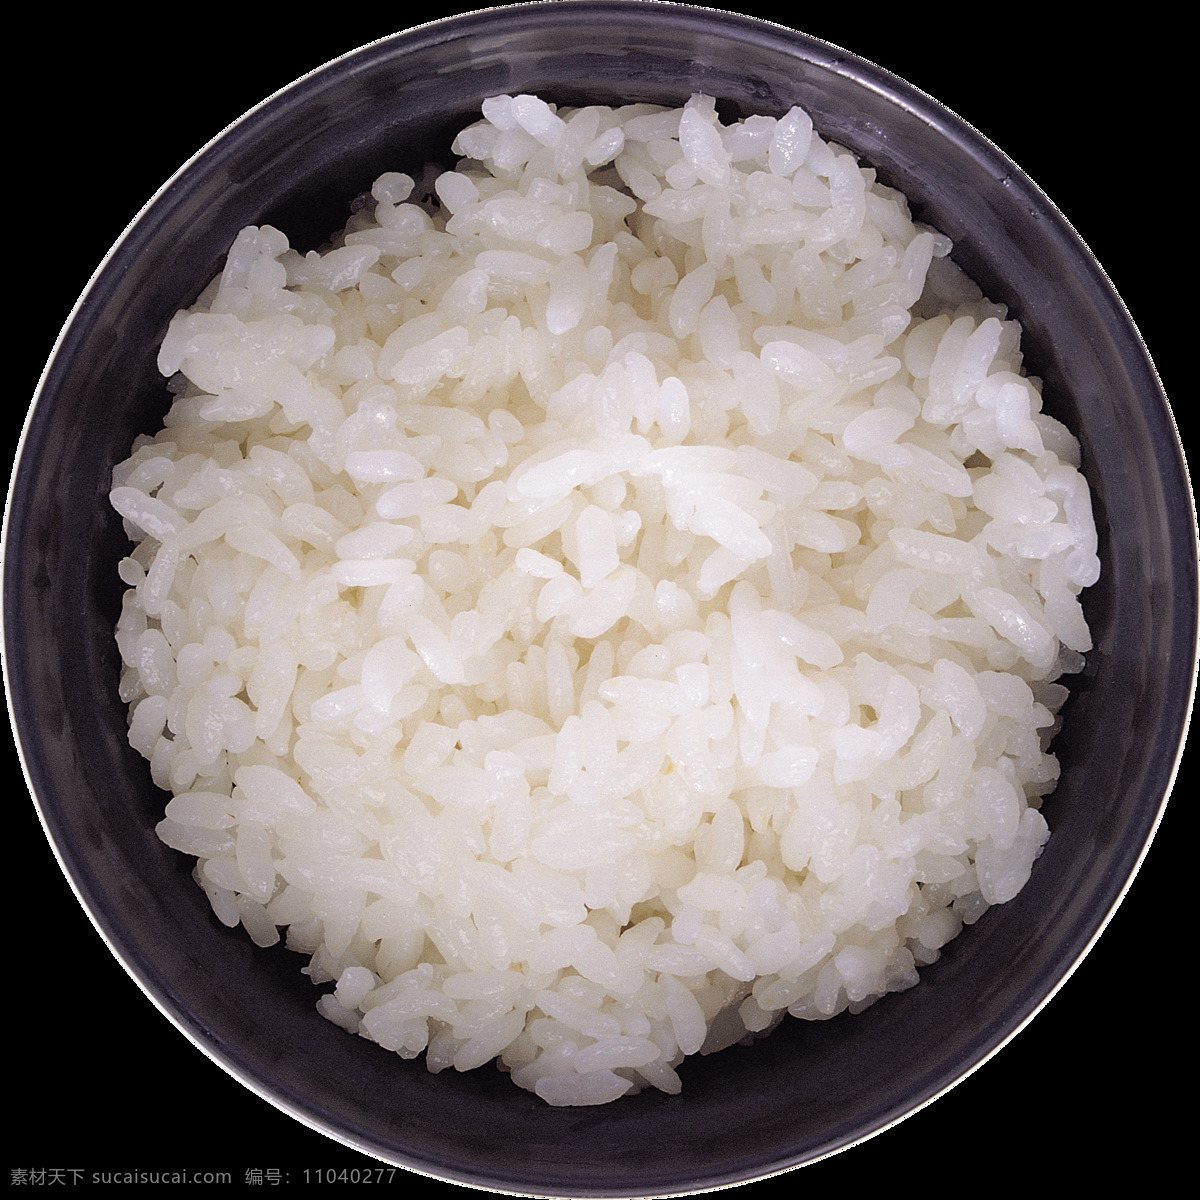 米饭图片 大米 米饭 水稻 米粒 稻子 稻谷 米 白米 白米饭 粮食 主食 饭 png图 透明图 免扣图 透明背景 透明底 抠图